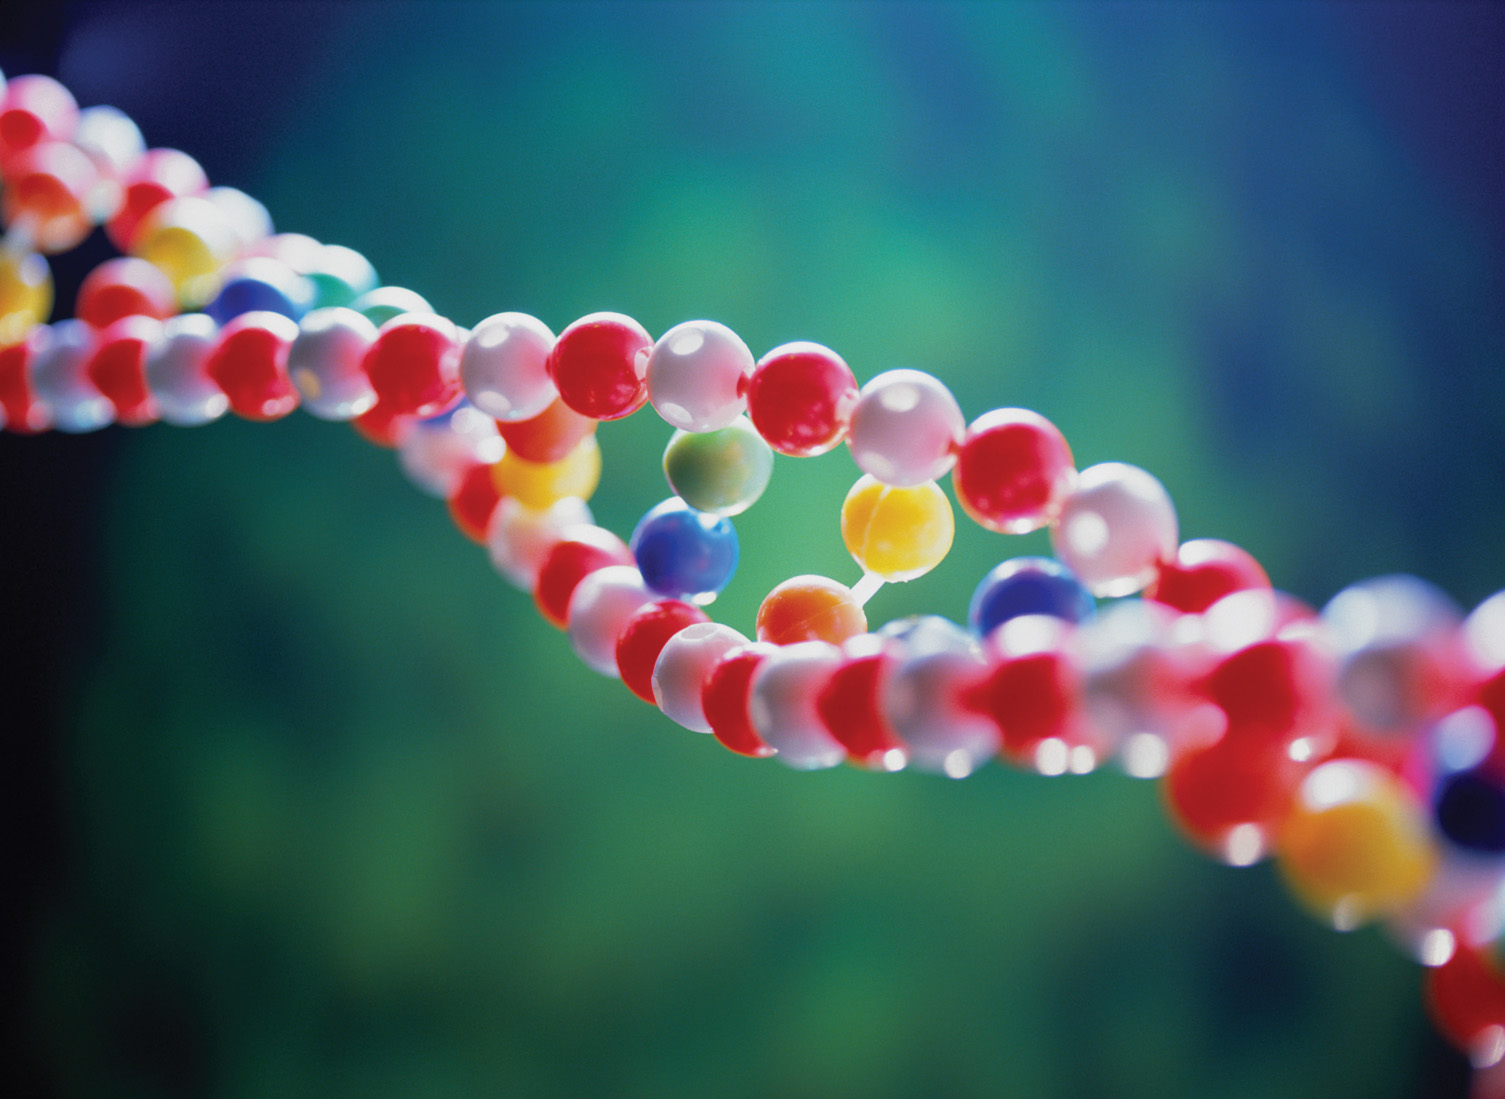 Will Genetic Alterations Modify Human Society